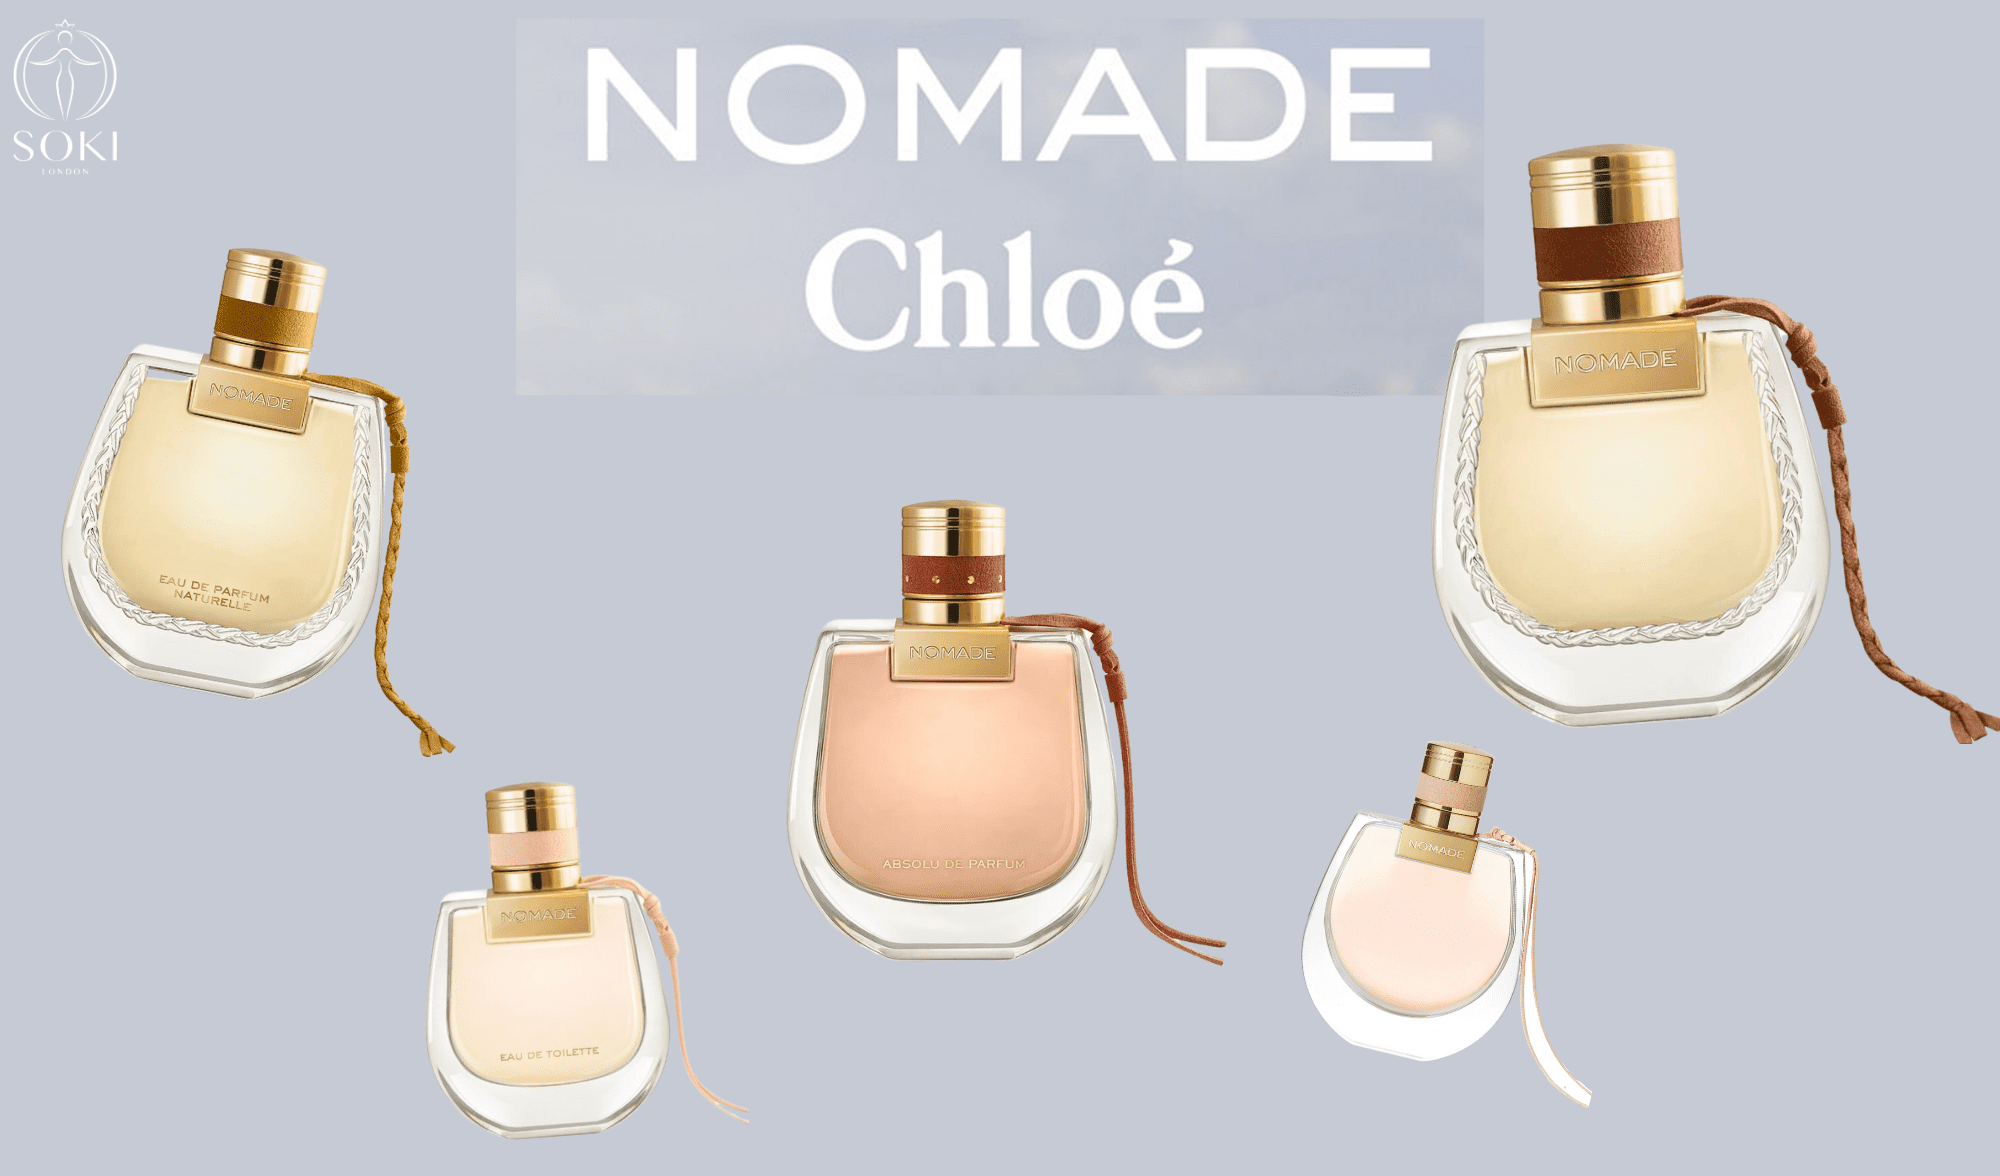 Chloé Nomade Naturelle vs Chloé Nomade ~ Original vs Flanker